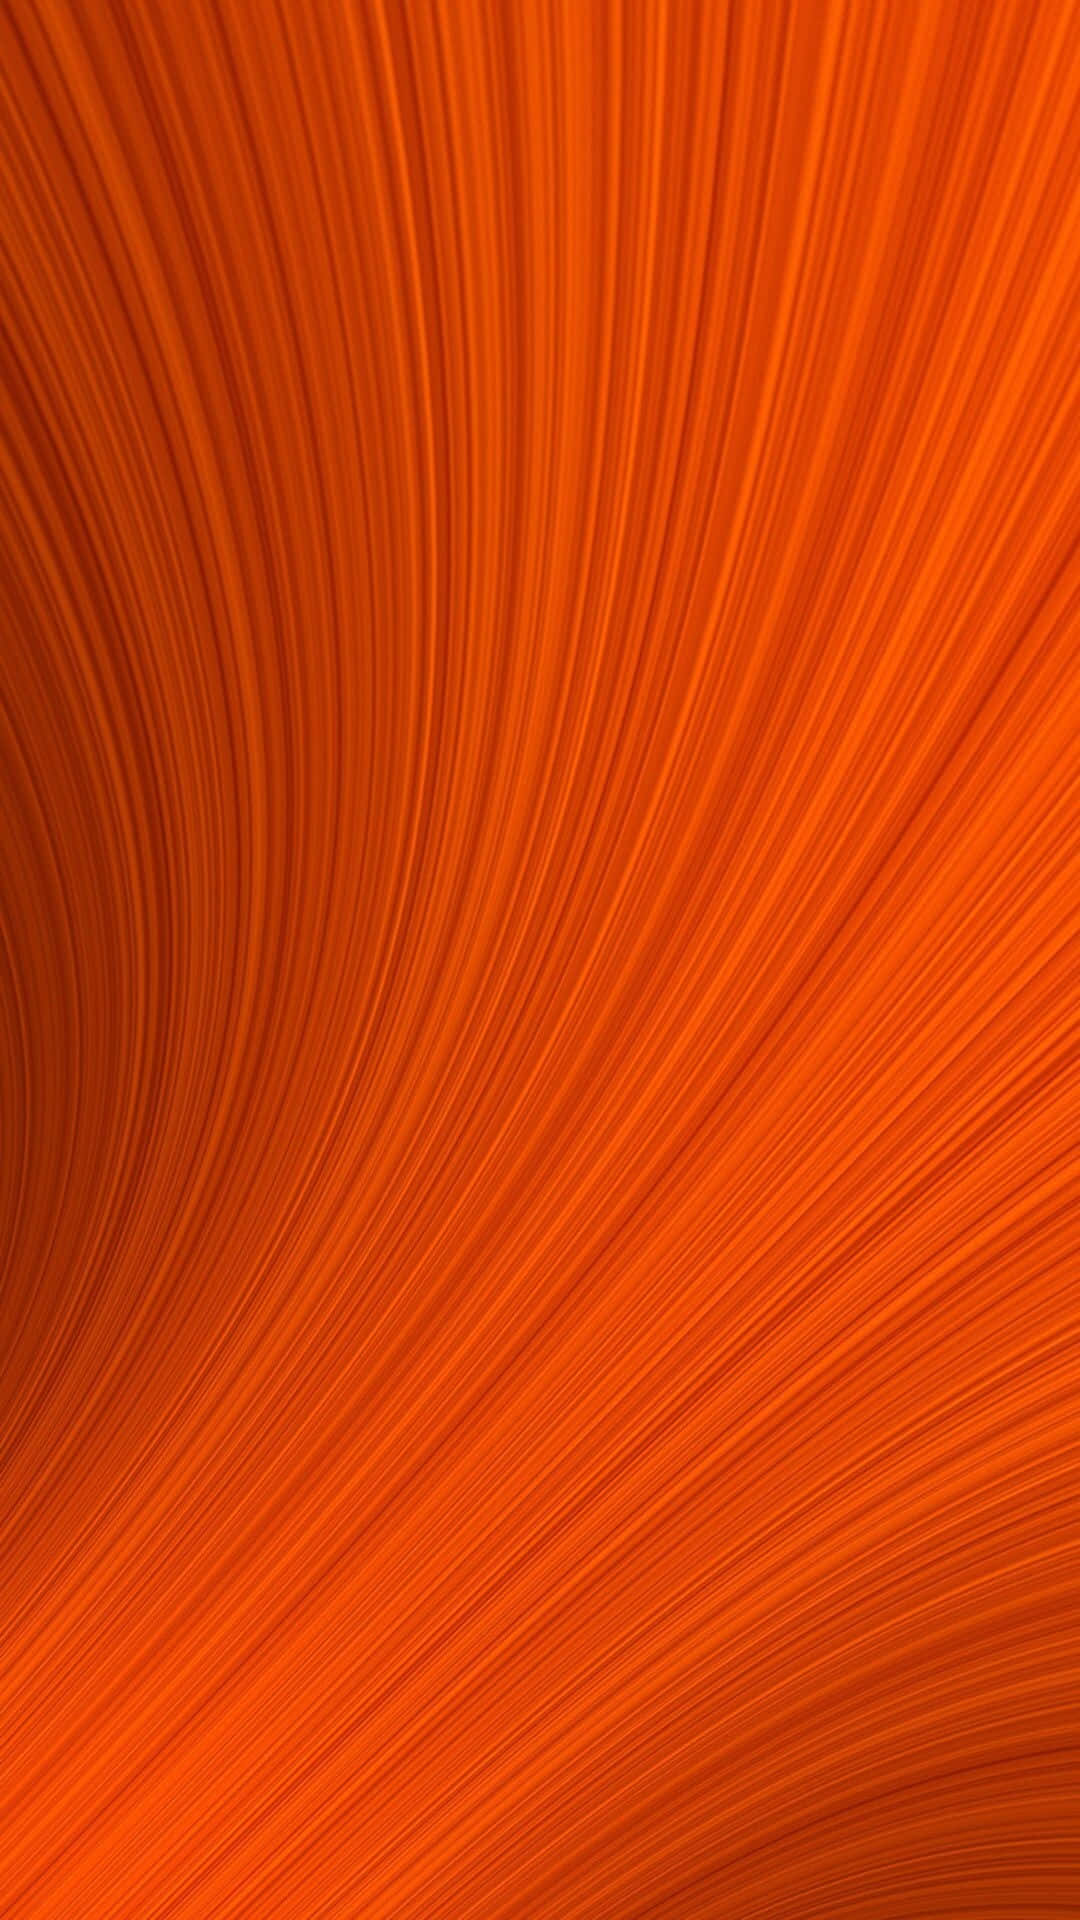 Orangeabstrakter Hintergrund Mit Wellenförmigen Linien Wallpaper